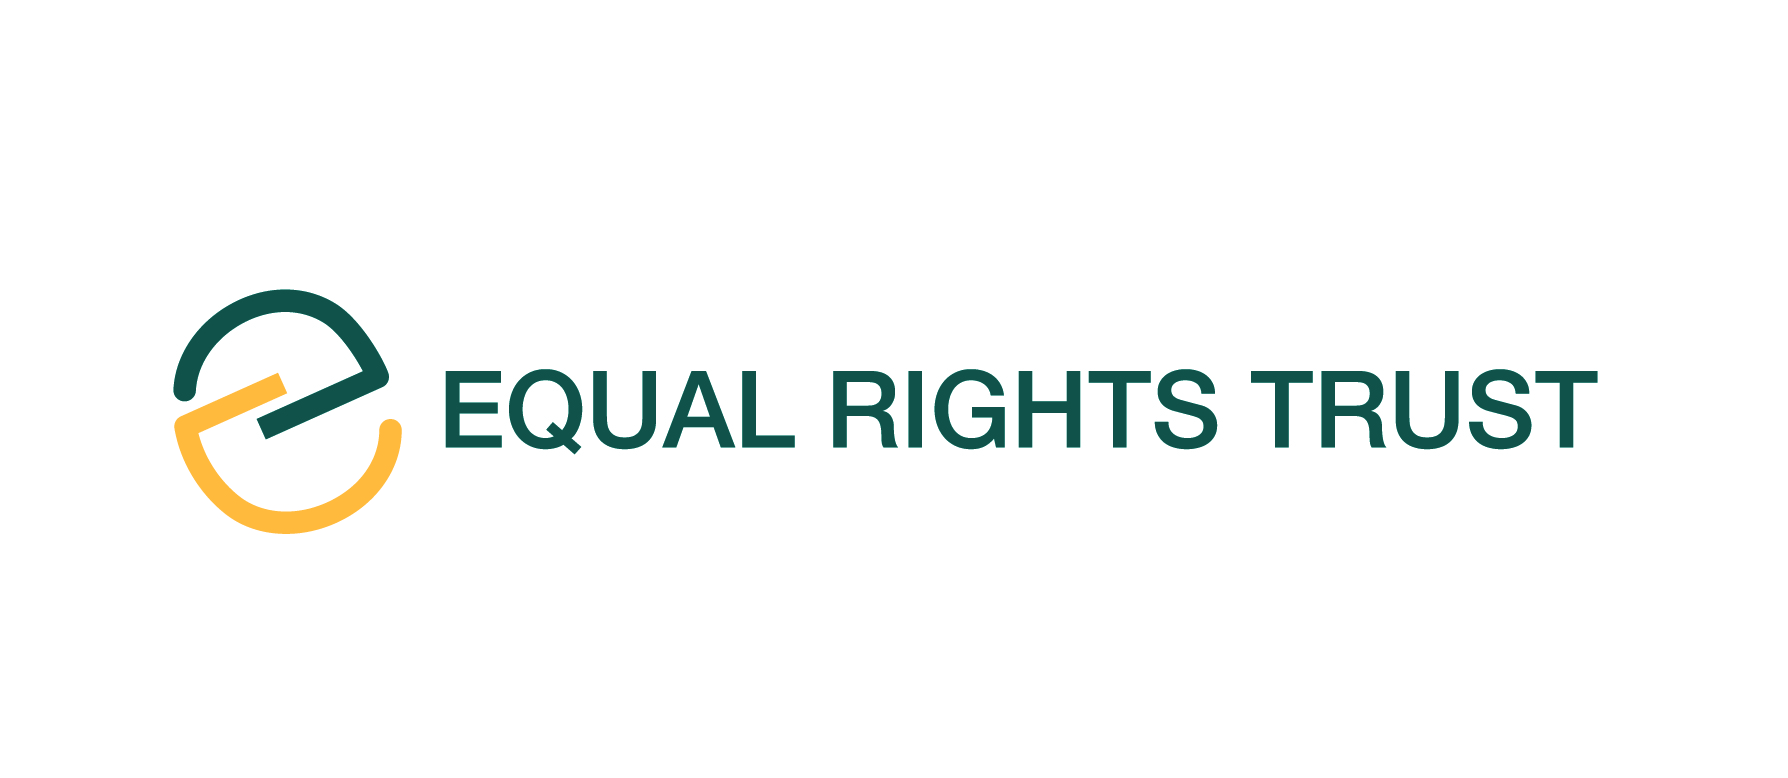 EqualRightsTrust-logo.jpg